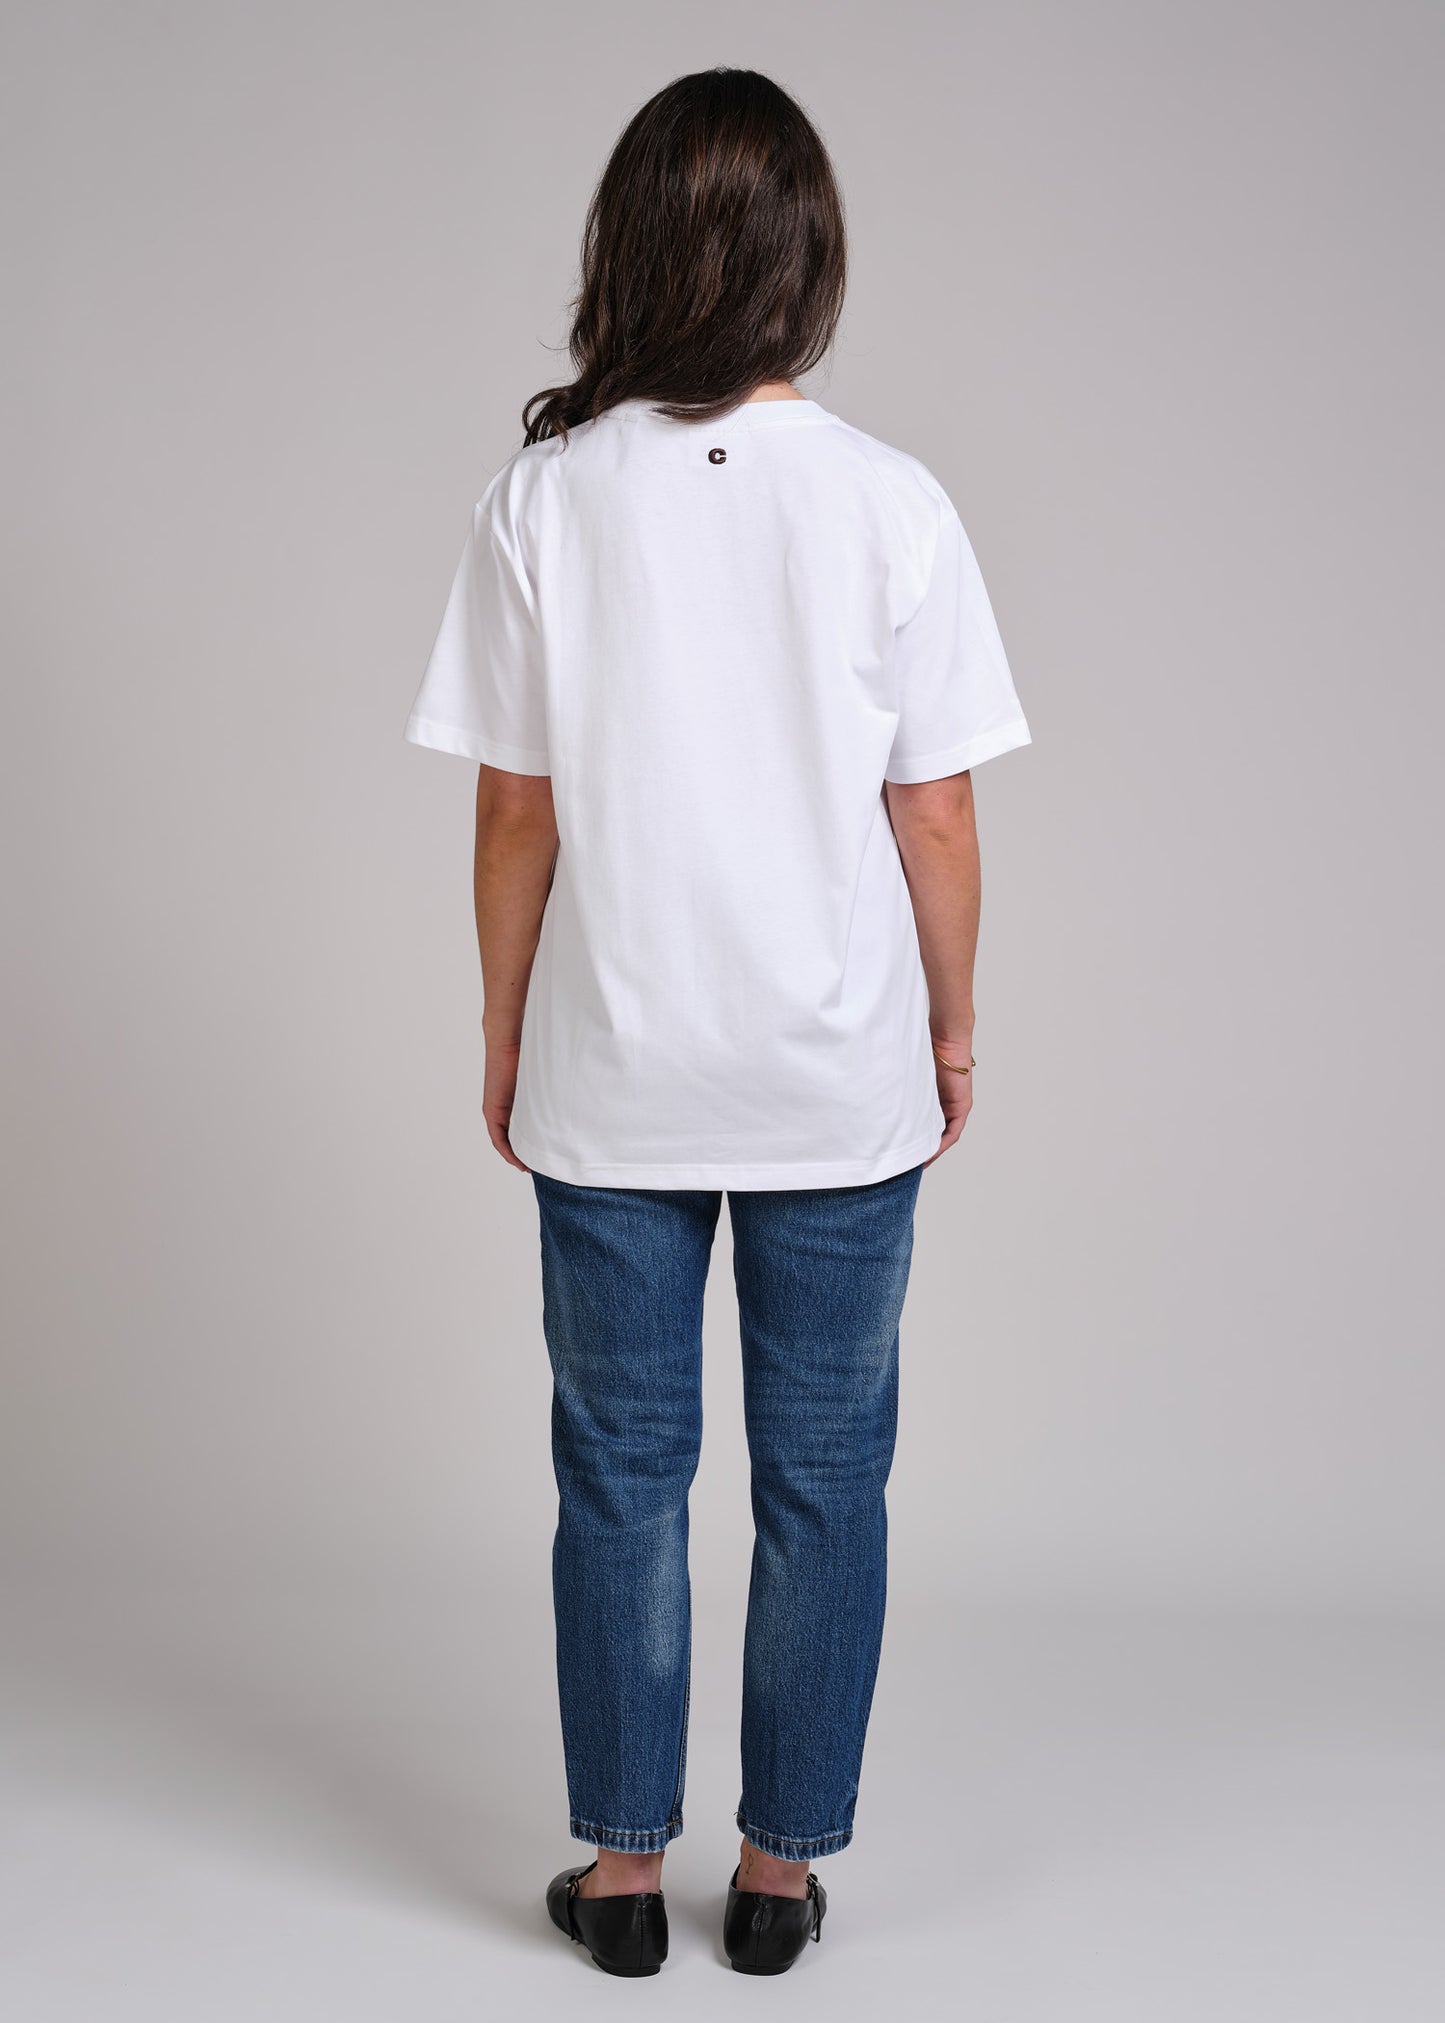 Classic T-Shirt V2 - White